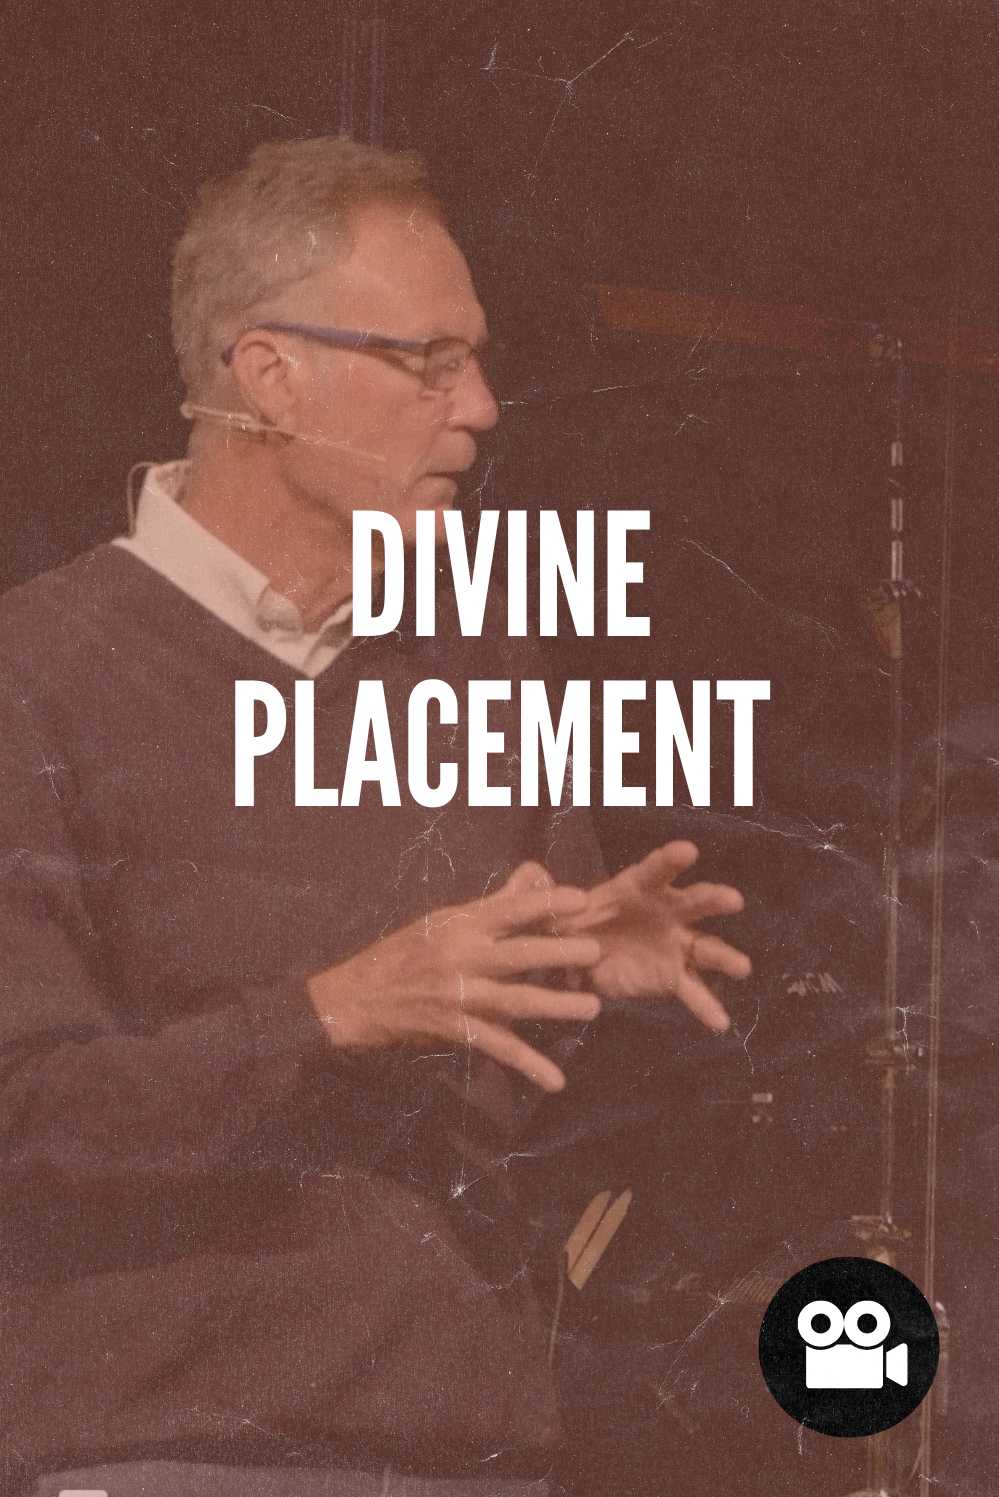 DIvine Placement